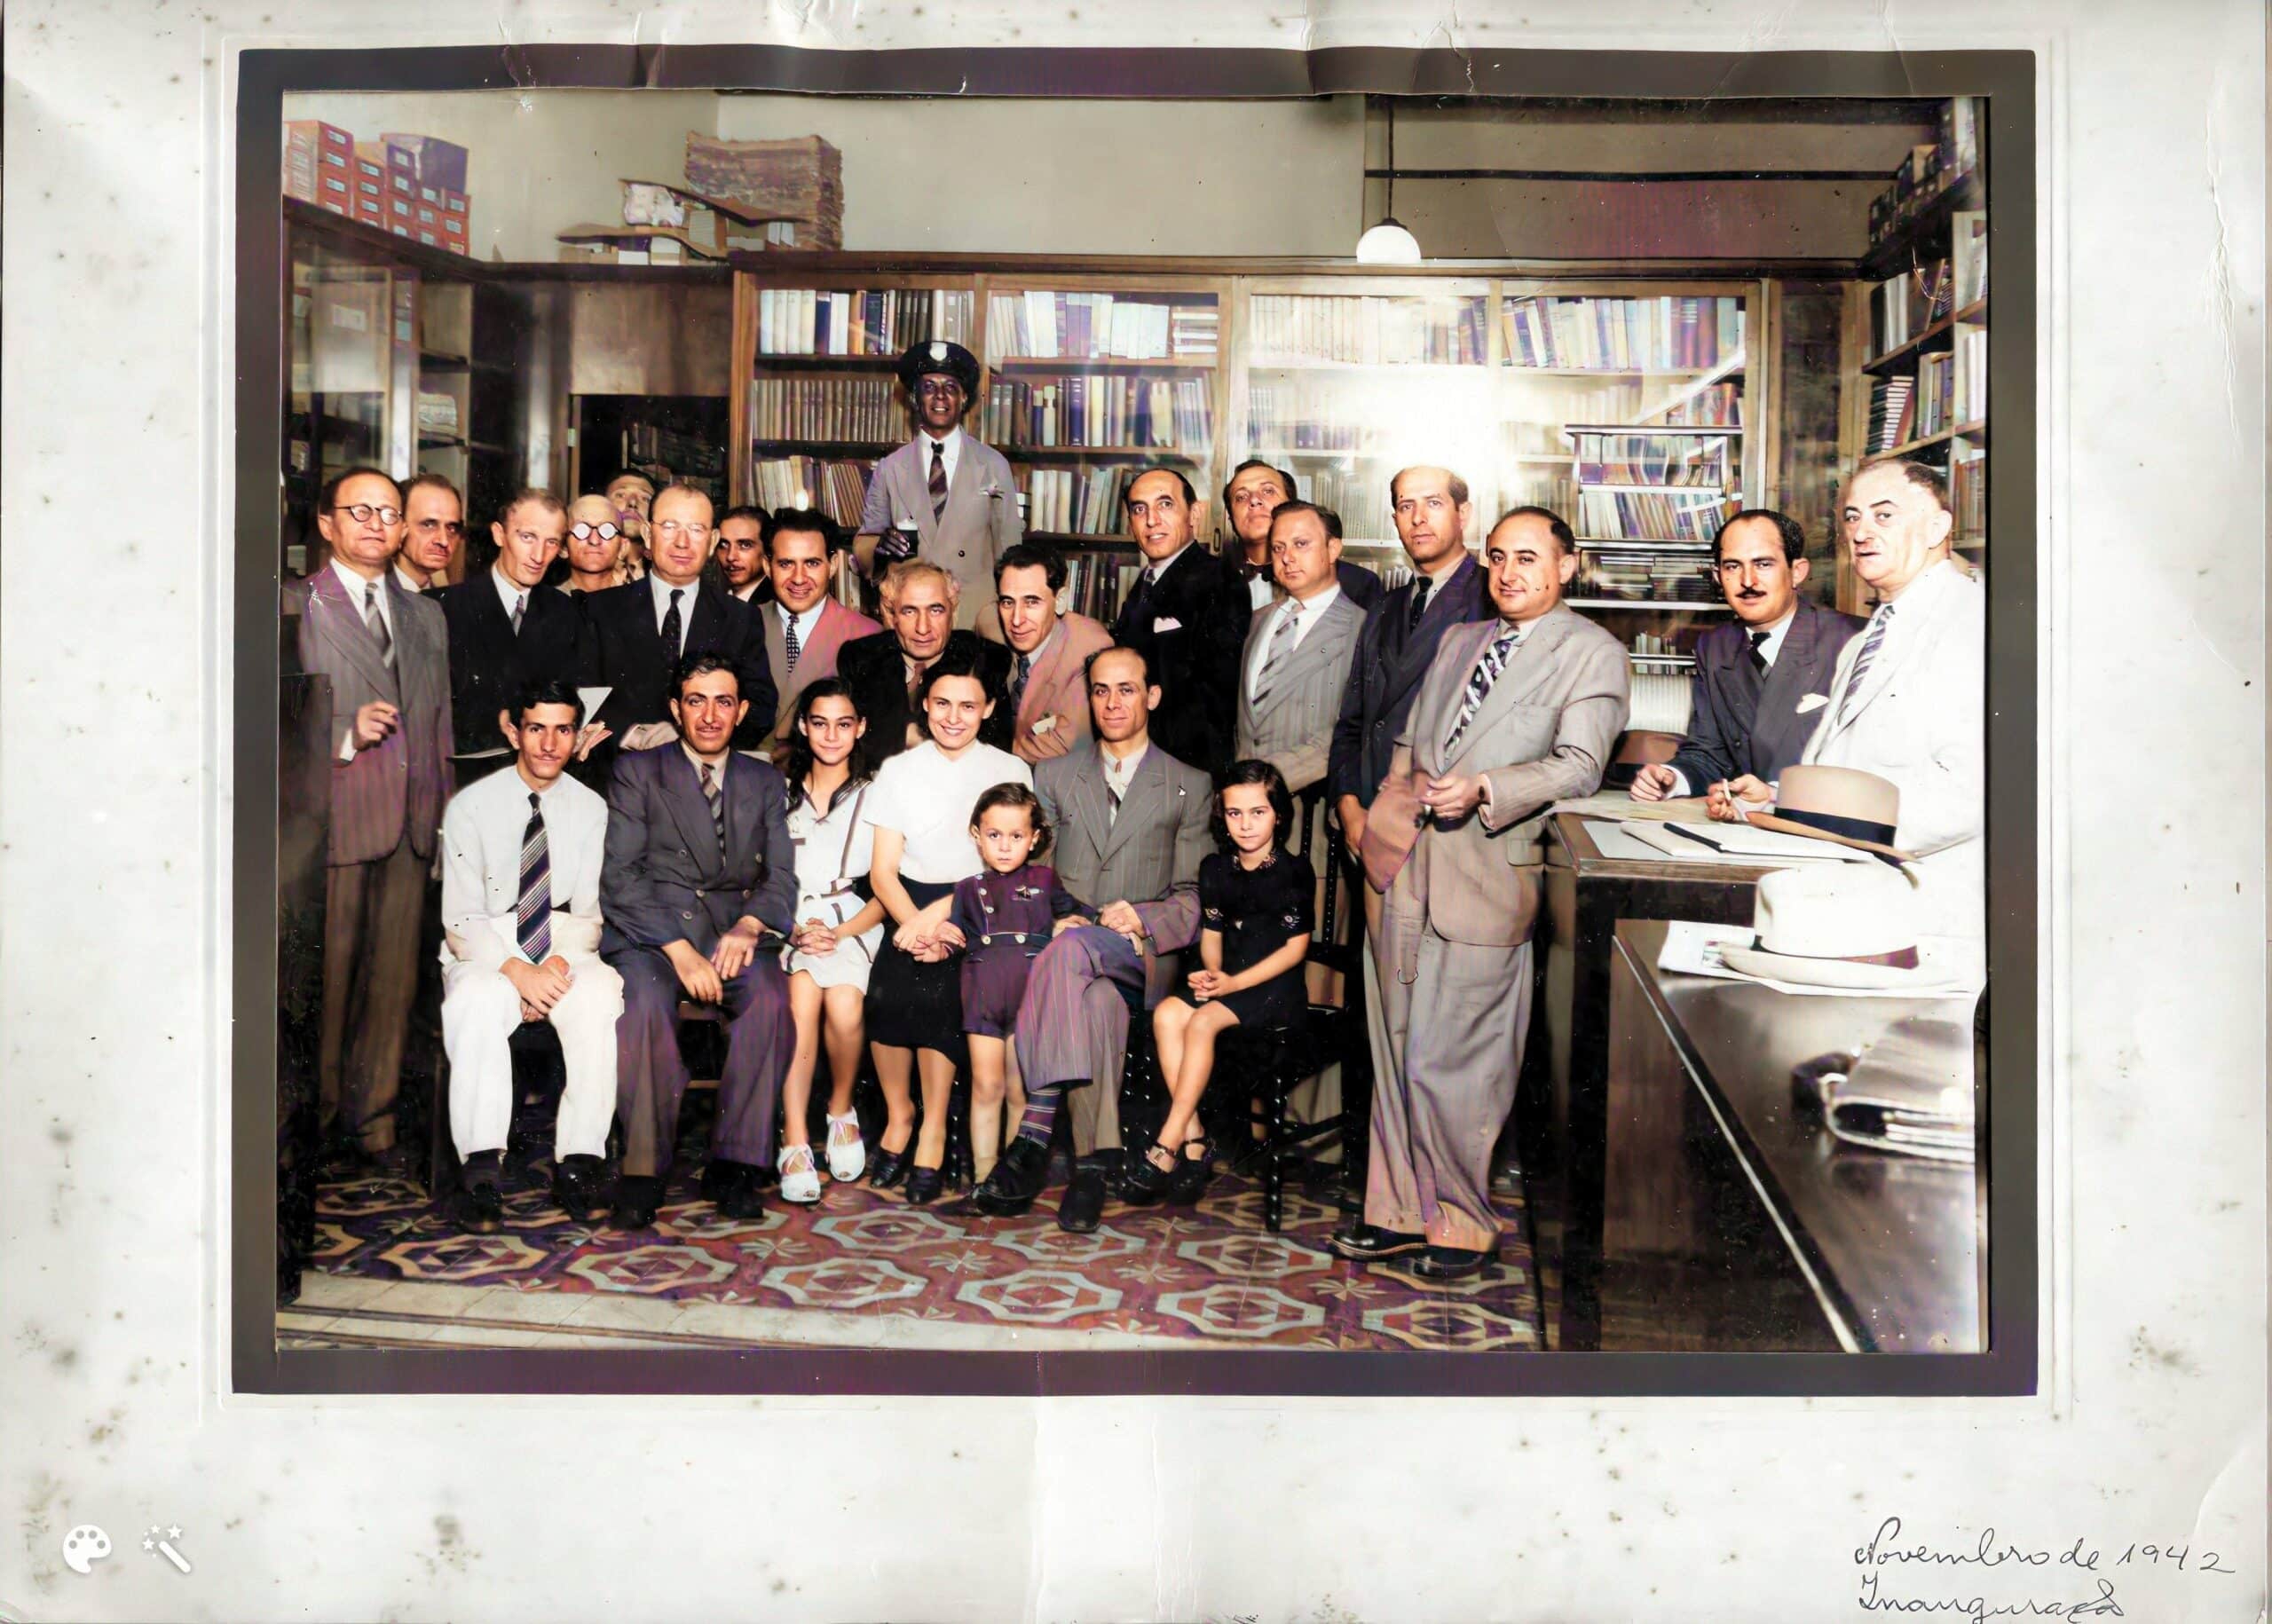 “סלון ספרותי" בחנות הספרים היהודיים "ספריית כהן" של סבא וסבתא מצד אמו של ירושלמי, בריו דה ז'נירו